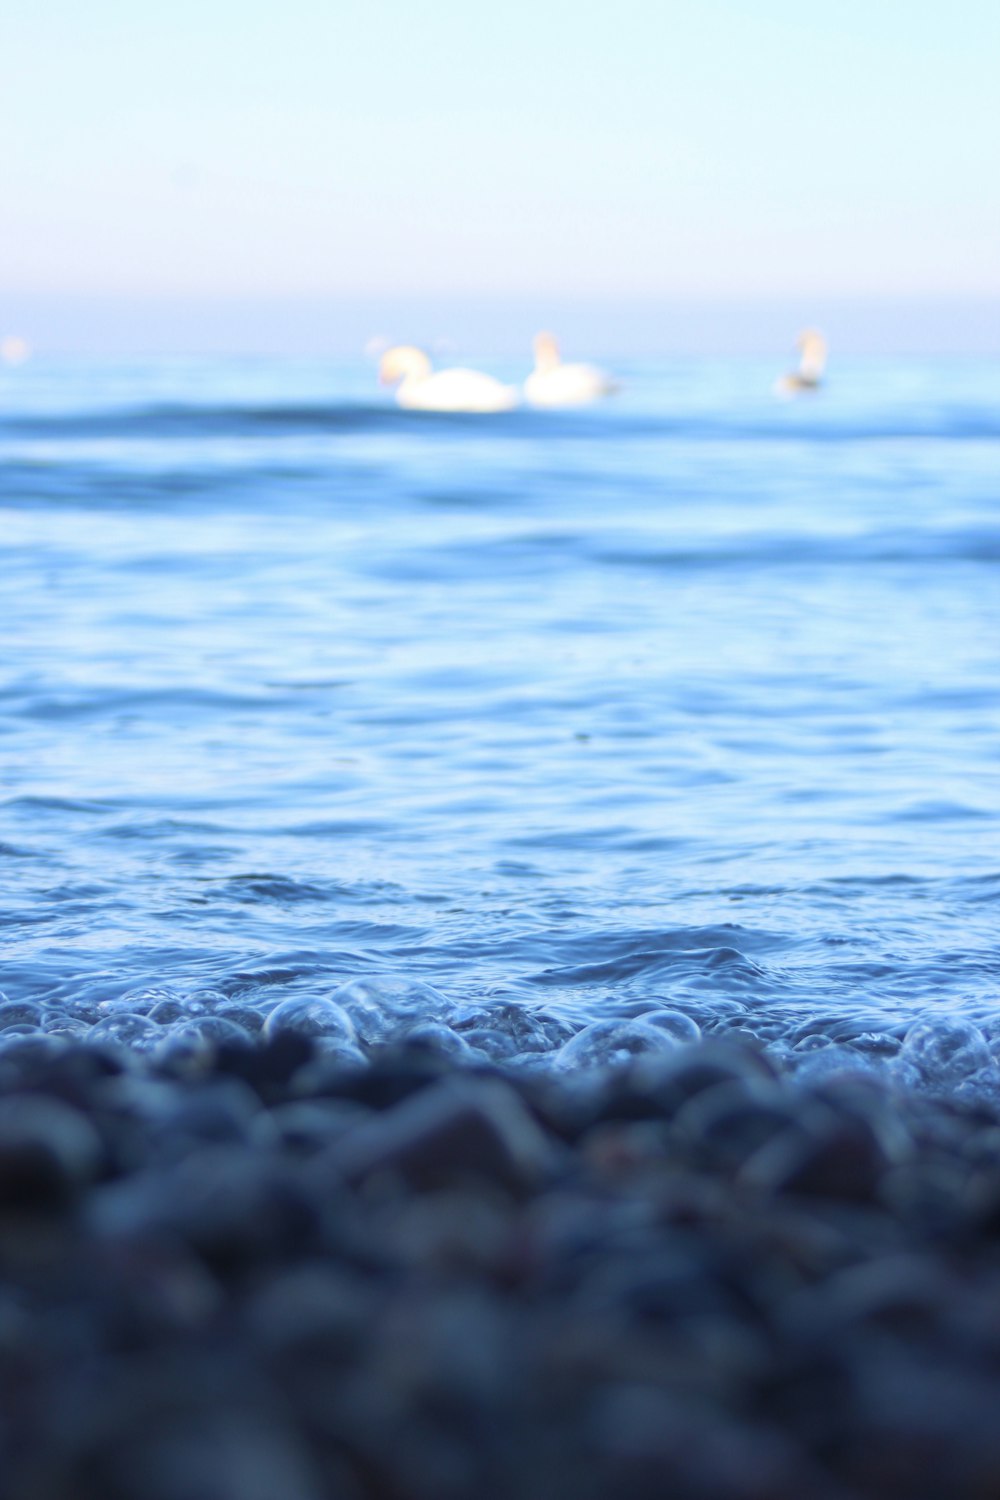 pietre bianche e nere sull'acqua di mare durante il giorno